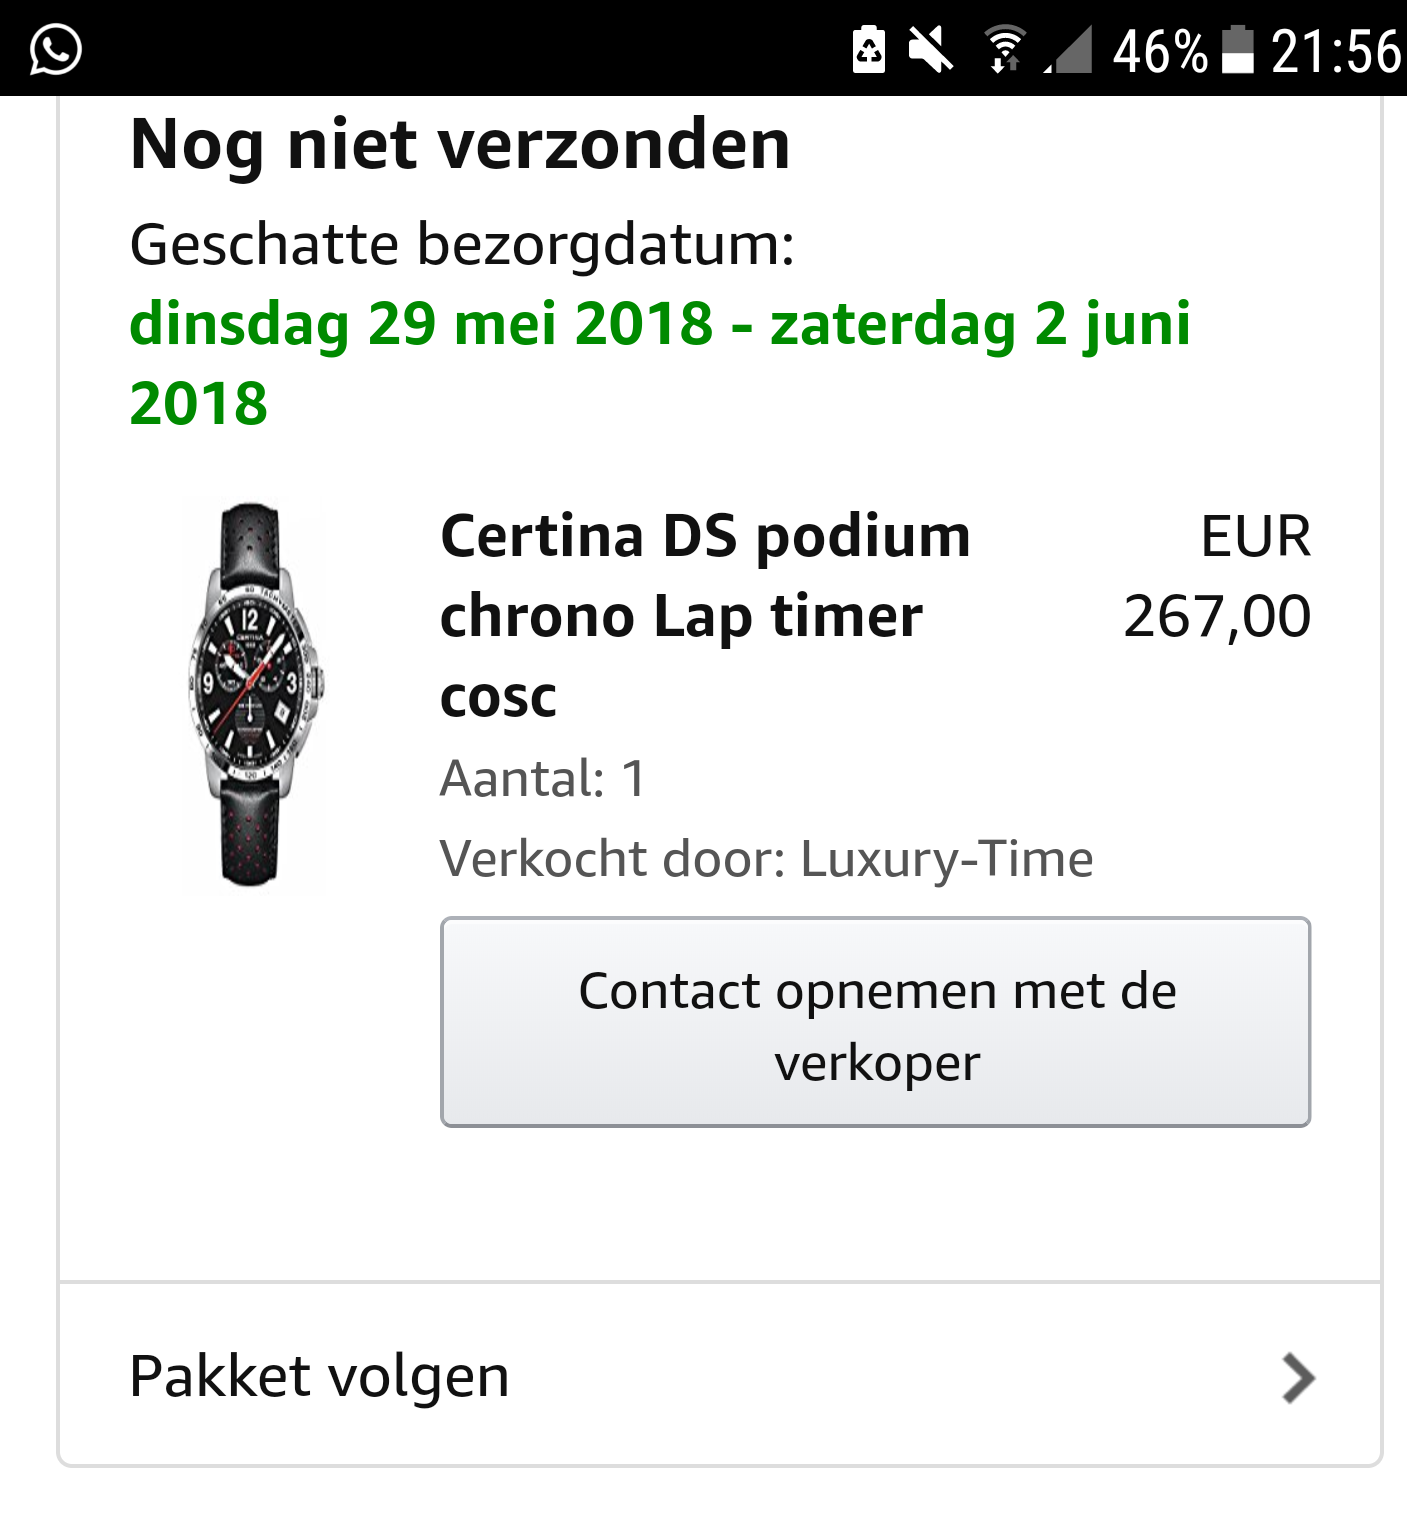 Genre Airco compleet Amazon...vreemde zaak - Ervaring met (Ver)Kopers - Horlogeforum.nl - het  forum voor liefhebbers van horloges